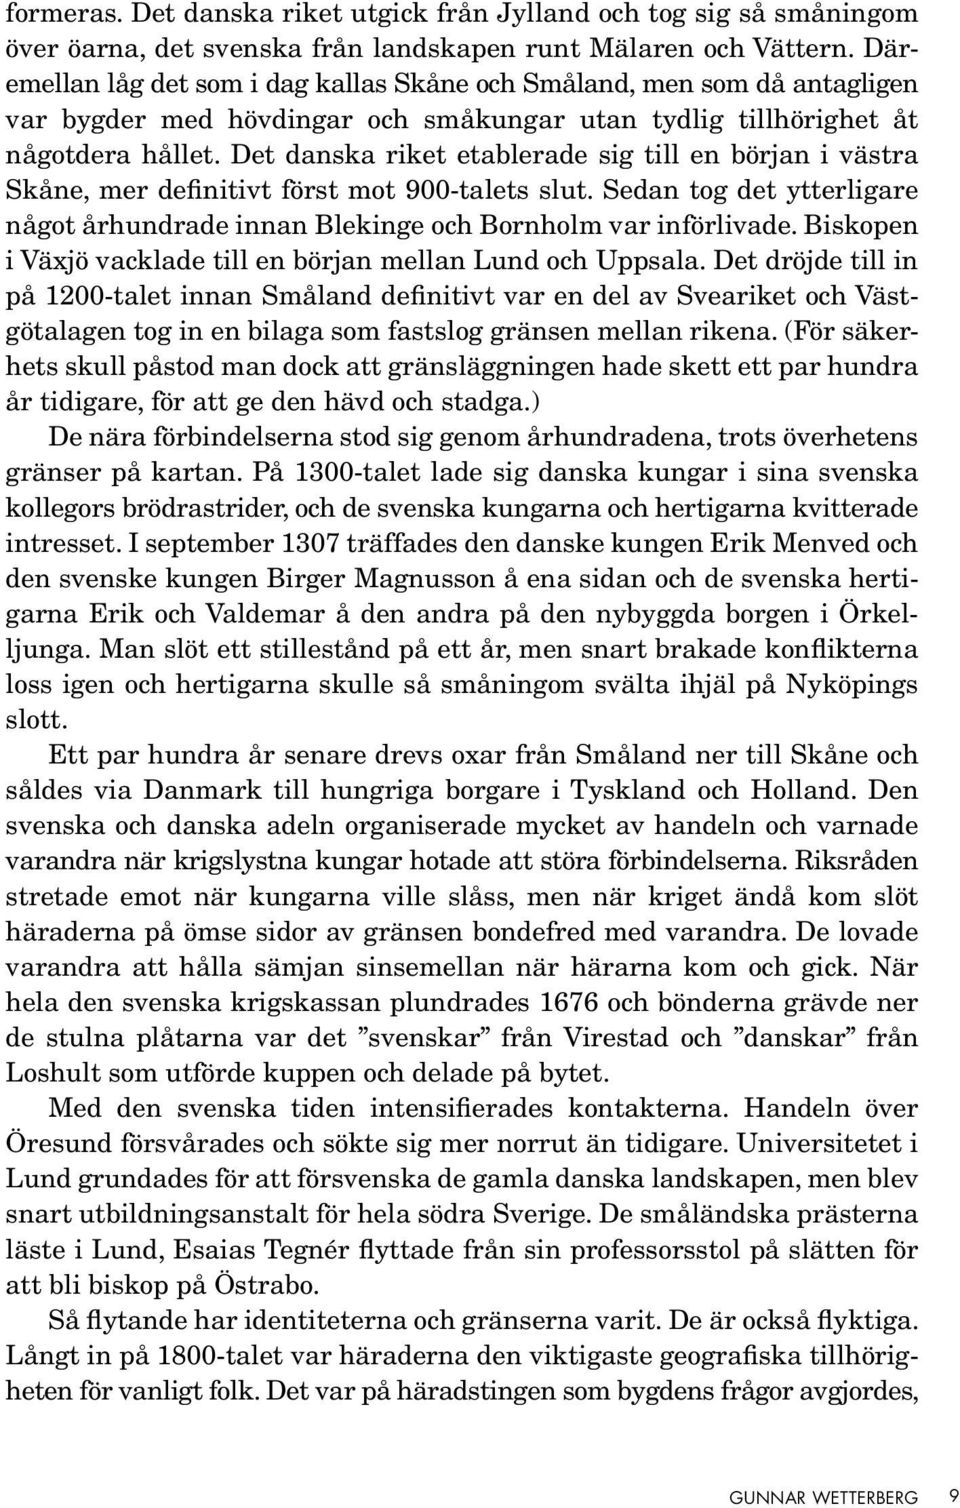 Det danska riket etablerade sig till en början i västra Skåne, mer definitivt först mot 900-talets slut. Sedan tog det ytterligare något århundrade innan Blekinge och Bornholm var införlivade.